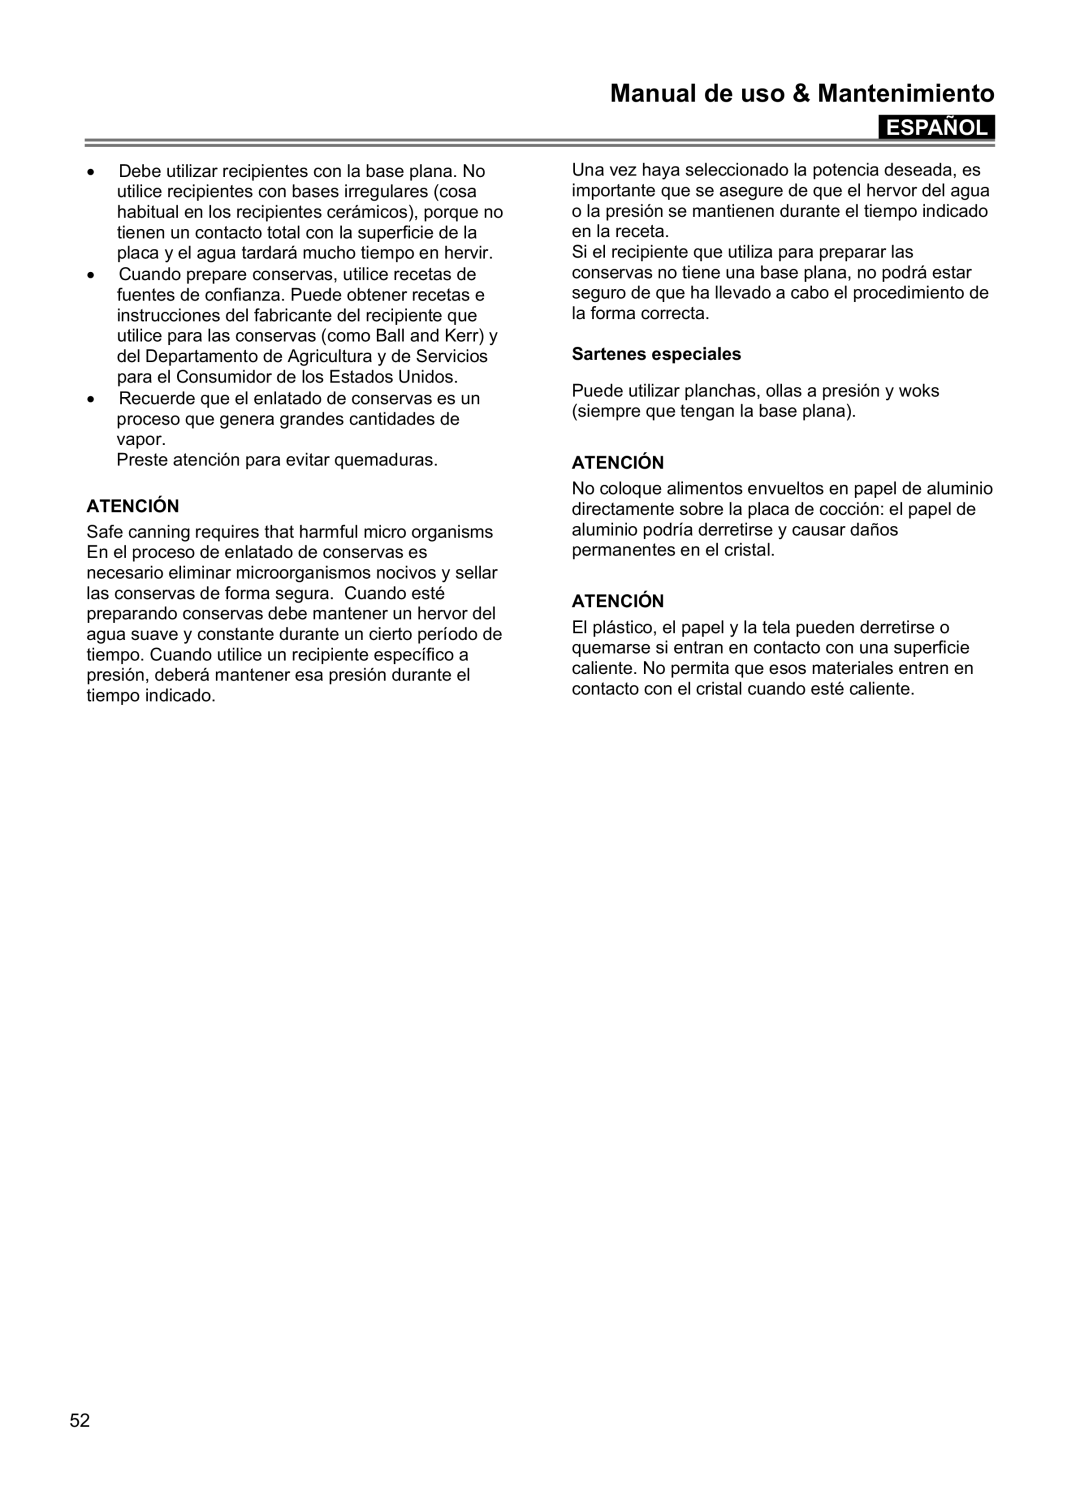 Blomberg CTE 36500, CTE 30400 manuel dutilisation Manual de uso & Mantenimiento, Español, Atención, Sartenes especiales 